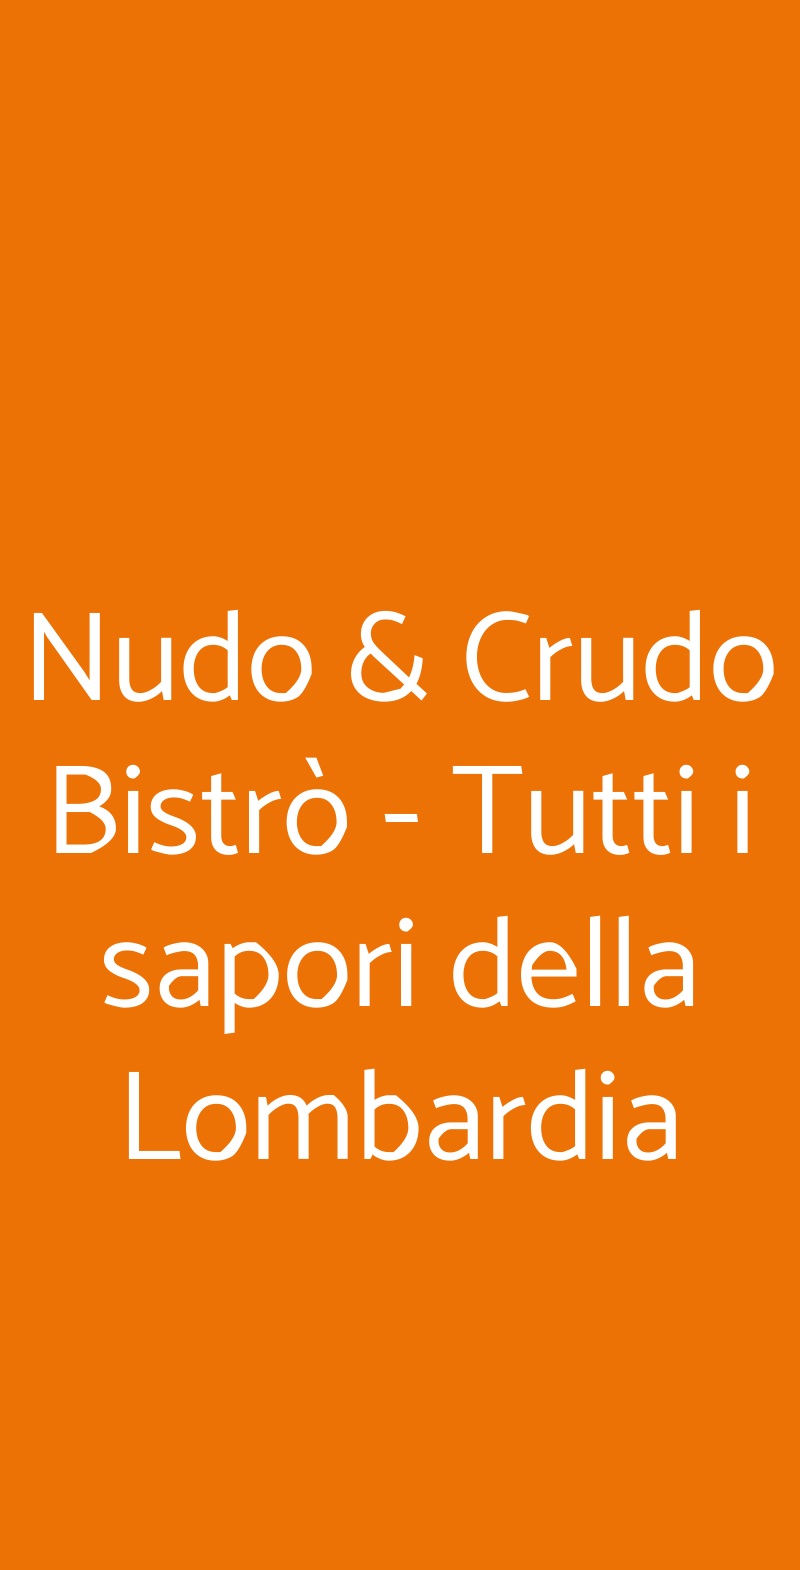 Nudo & Crudo Bistrò - Tutti i sapori della Lombardia Milano menù 1 pagina